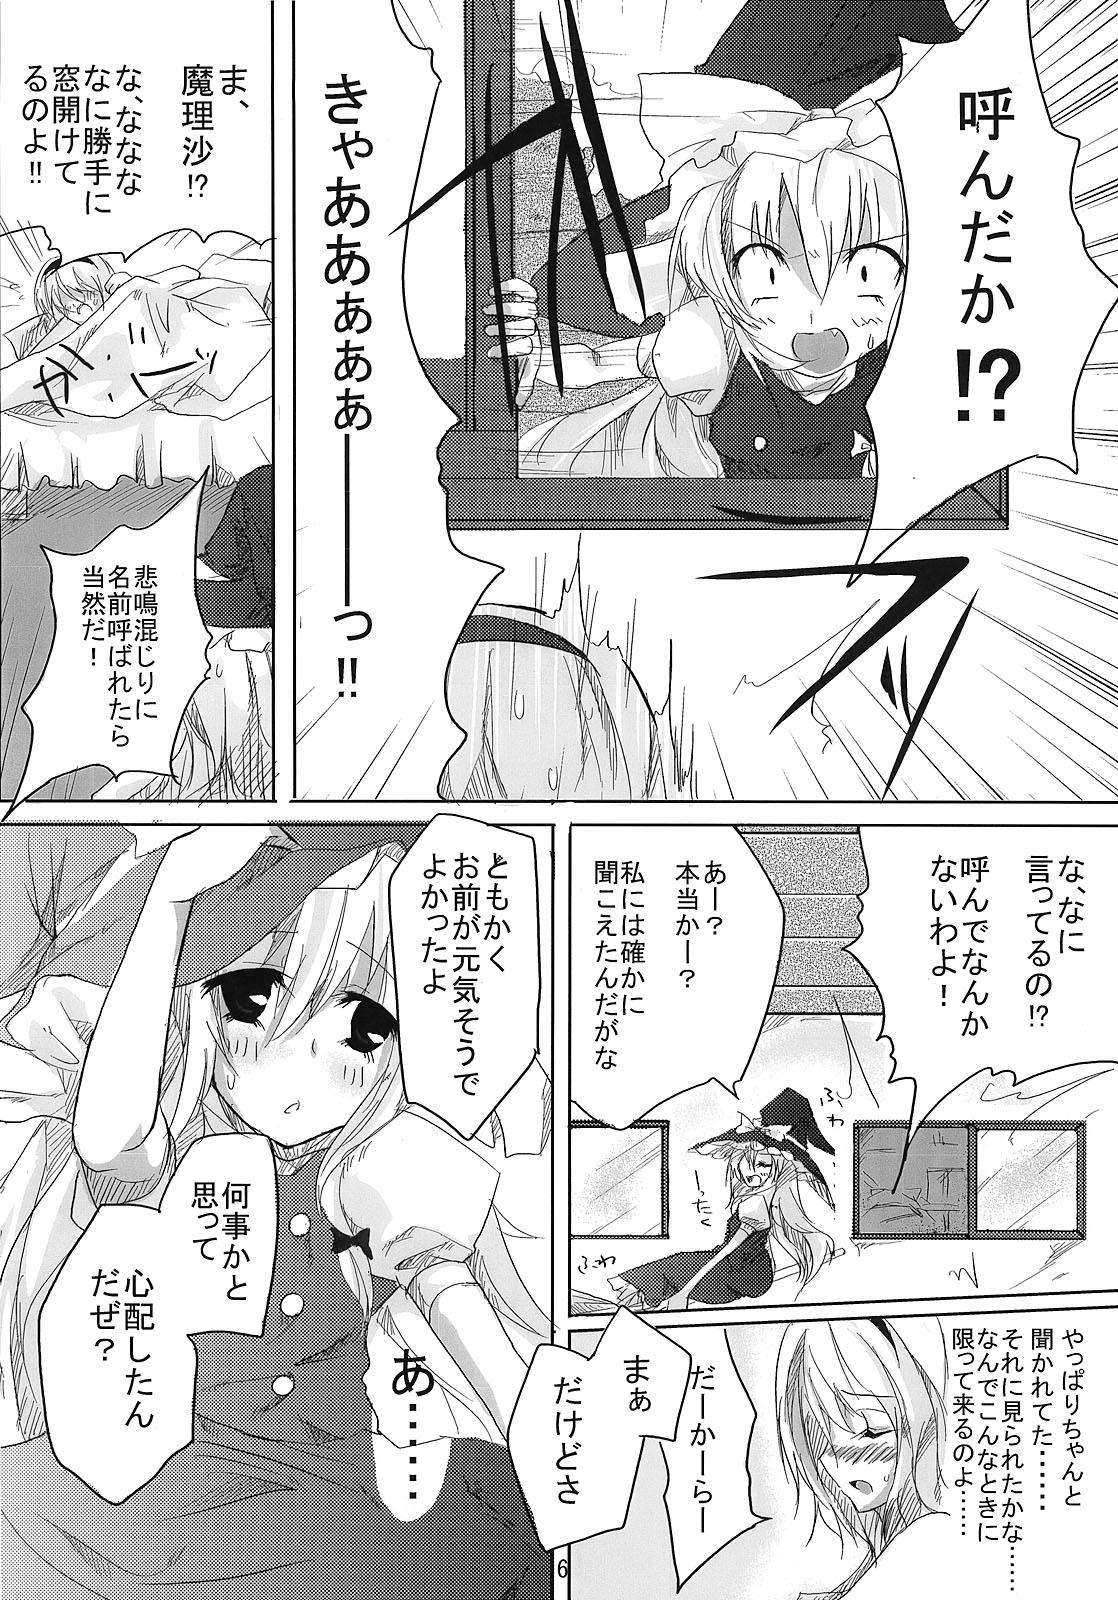 RAN × Yukari AND Alice × Marisa 4